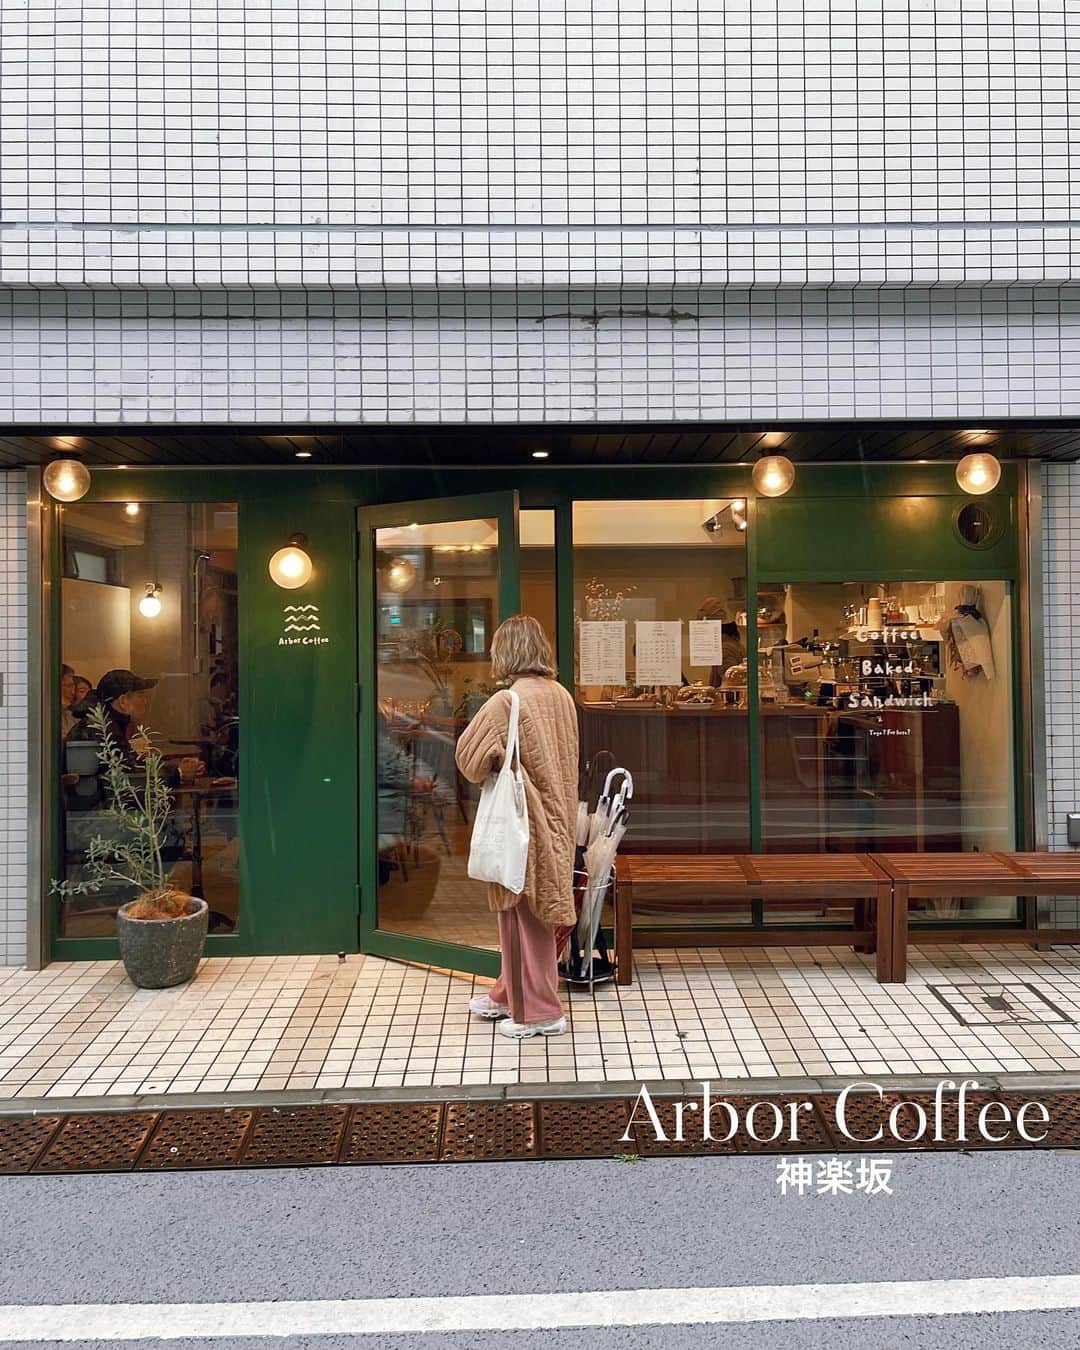 C A F E L O V E Rのインスタグラム：「Arbor Coffee // 神楽坂 緑の外観が目印のカフェ☕️🫛 木のぬくもりで、落ち着く店内✨ コーヒーと焼き菓子、サンドイッチのお店🥪  おひとり様、リピーターさん、ご近所さん、 さまざまな客層に人気！ アットホームな空間でまたリピートしたい 居心地の良いお店でした✨ ------------------------------------- ◼︎オーダー ・チキンとトマトのホットサンド¥1180 （ドリンク付き） 全粒粉を使用しているパンはさっくさくで 中の具材もたっぷりで食べ応えのあるサンドでした🥪 付け合わせのキャベツもさっぱり食べれて◎ セットのドリンクはどれでもokとのことで、良心的✨ たっぷりなラテはアートも美しく見た目でも楽しめました💕  ・バターミルクスコーン¥350 ・チョコチップスコーン¥350 店内で焼き上げている焼き菓子も充実していて、 優しい甘さ🥧 季節によって変わったり、他も美味しそうだったので また伺いたいです💕  ◼︎広さ 席数14 テーブル6席 地域の方にも人気のお店で満席でした！ 余裕を持って行くのがおすすめ  ◼︎テイクアウト 可  ◼︎最寄駅 神楽坂駅の1a出口、江戸川橋から徒歩６分ほど。 飯田橋駅から徒歩14分 ------------------------------------- @arborcoffee_2022  #ArborCoffee #アーバーコーヒー ㅤ ※営業状況やメニューなど詳細は、 各アカウントでご確認ください」